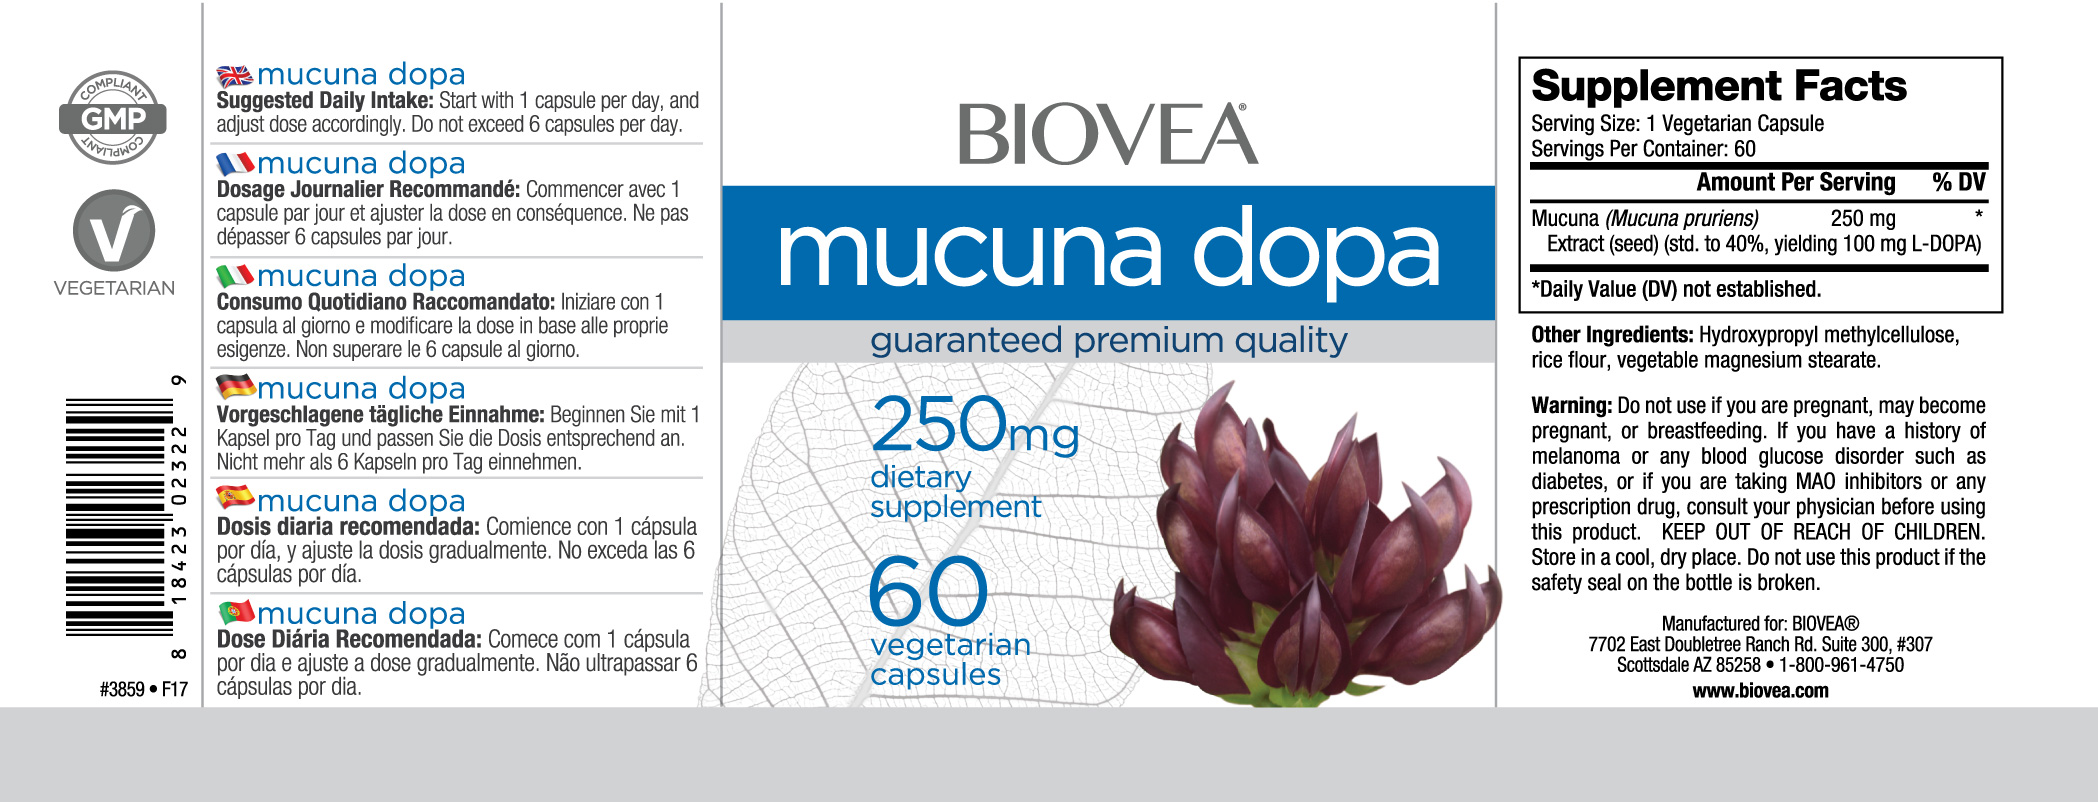 BIOVEA  MUCUNA DOPA 250 mg / 60 Vegetarian Capsules